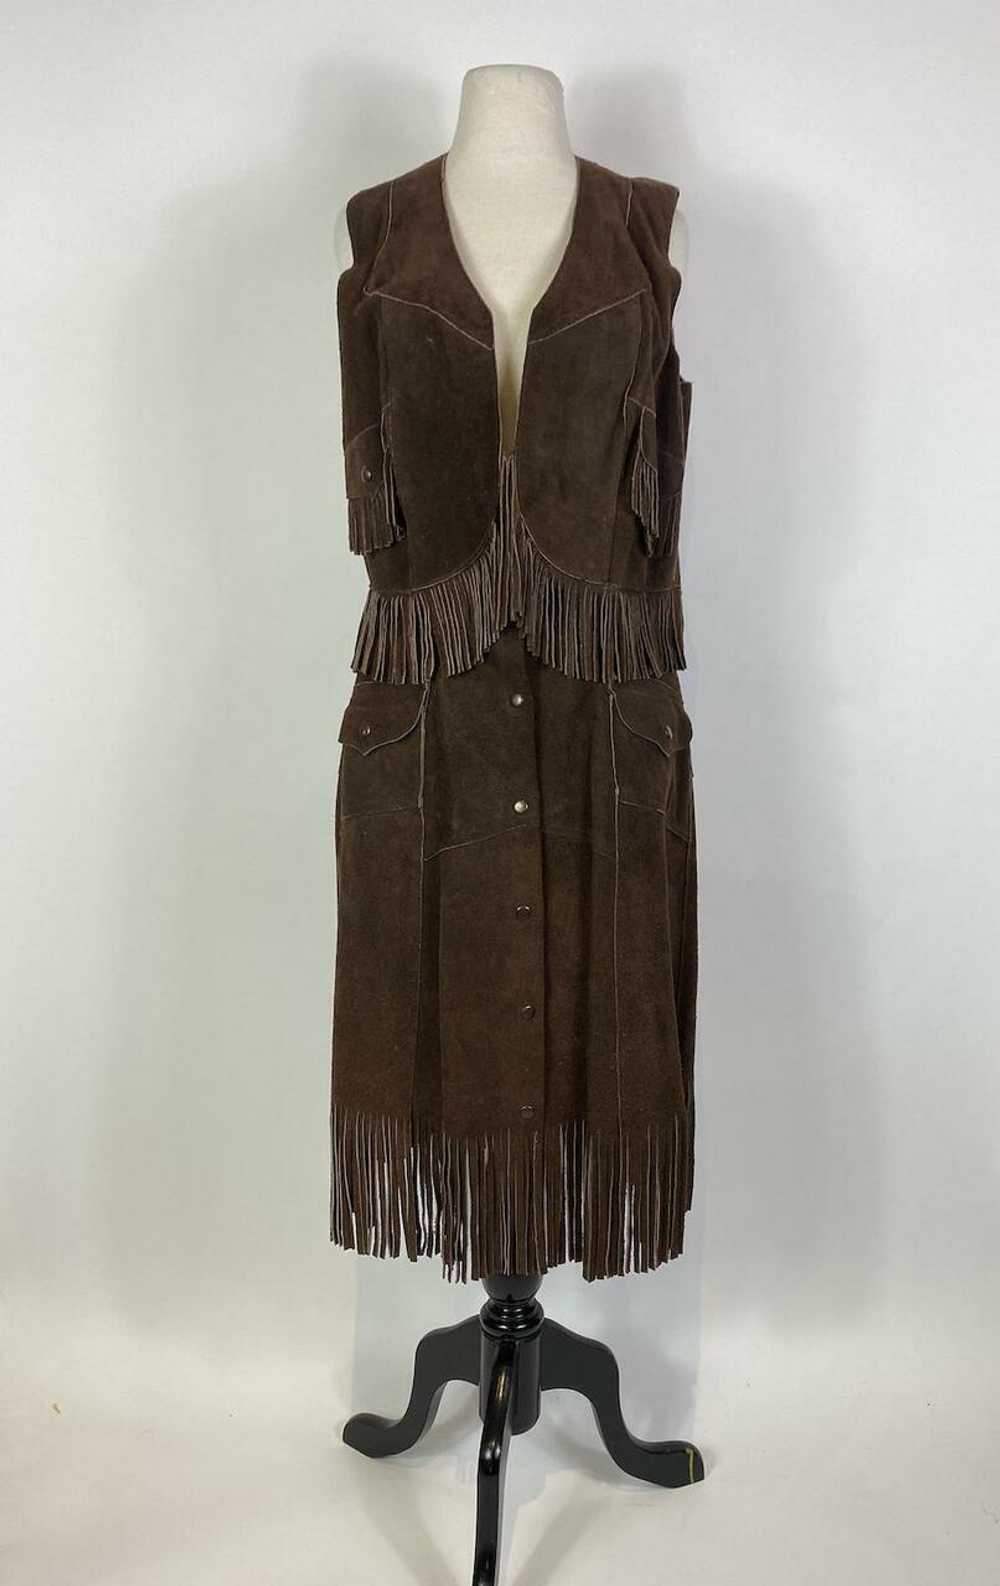 1970s Suede Leather Fringe Vest and Skirt Set - image 1